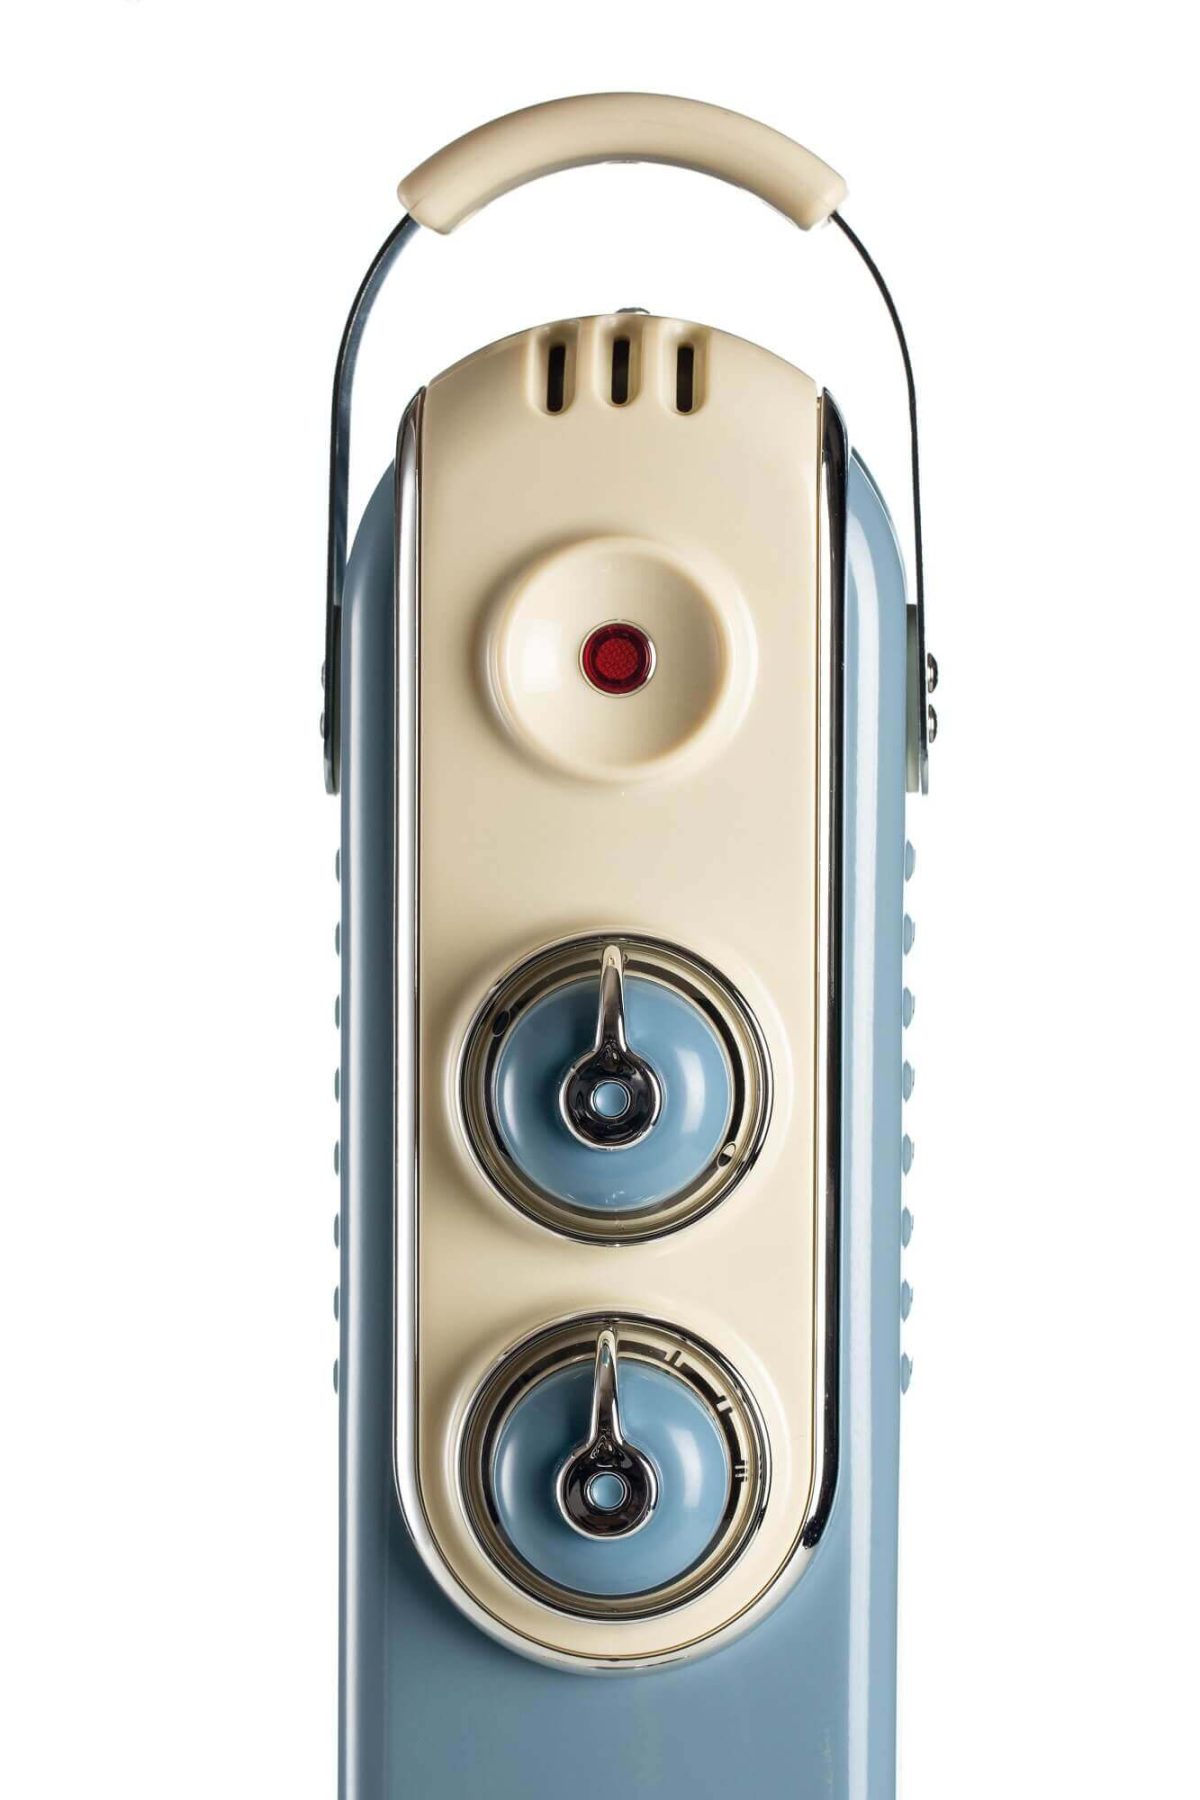 Ретро транзисторно радио в кремаво и синьо с бутони за управление и дръжка за носене, изолирано на бял фон.